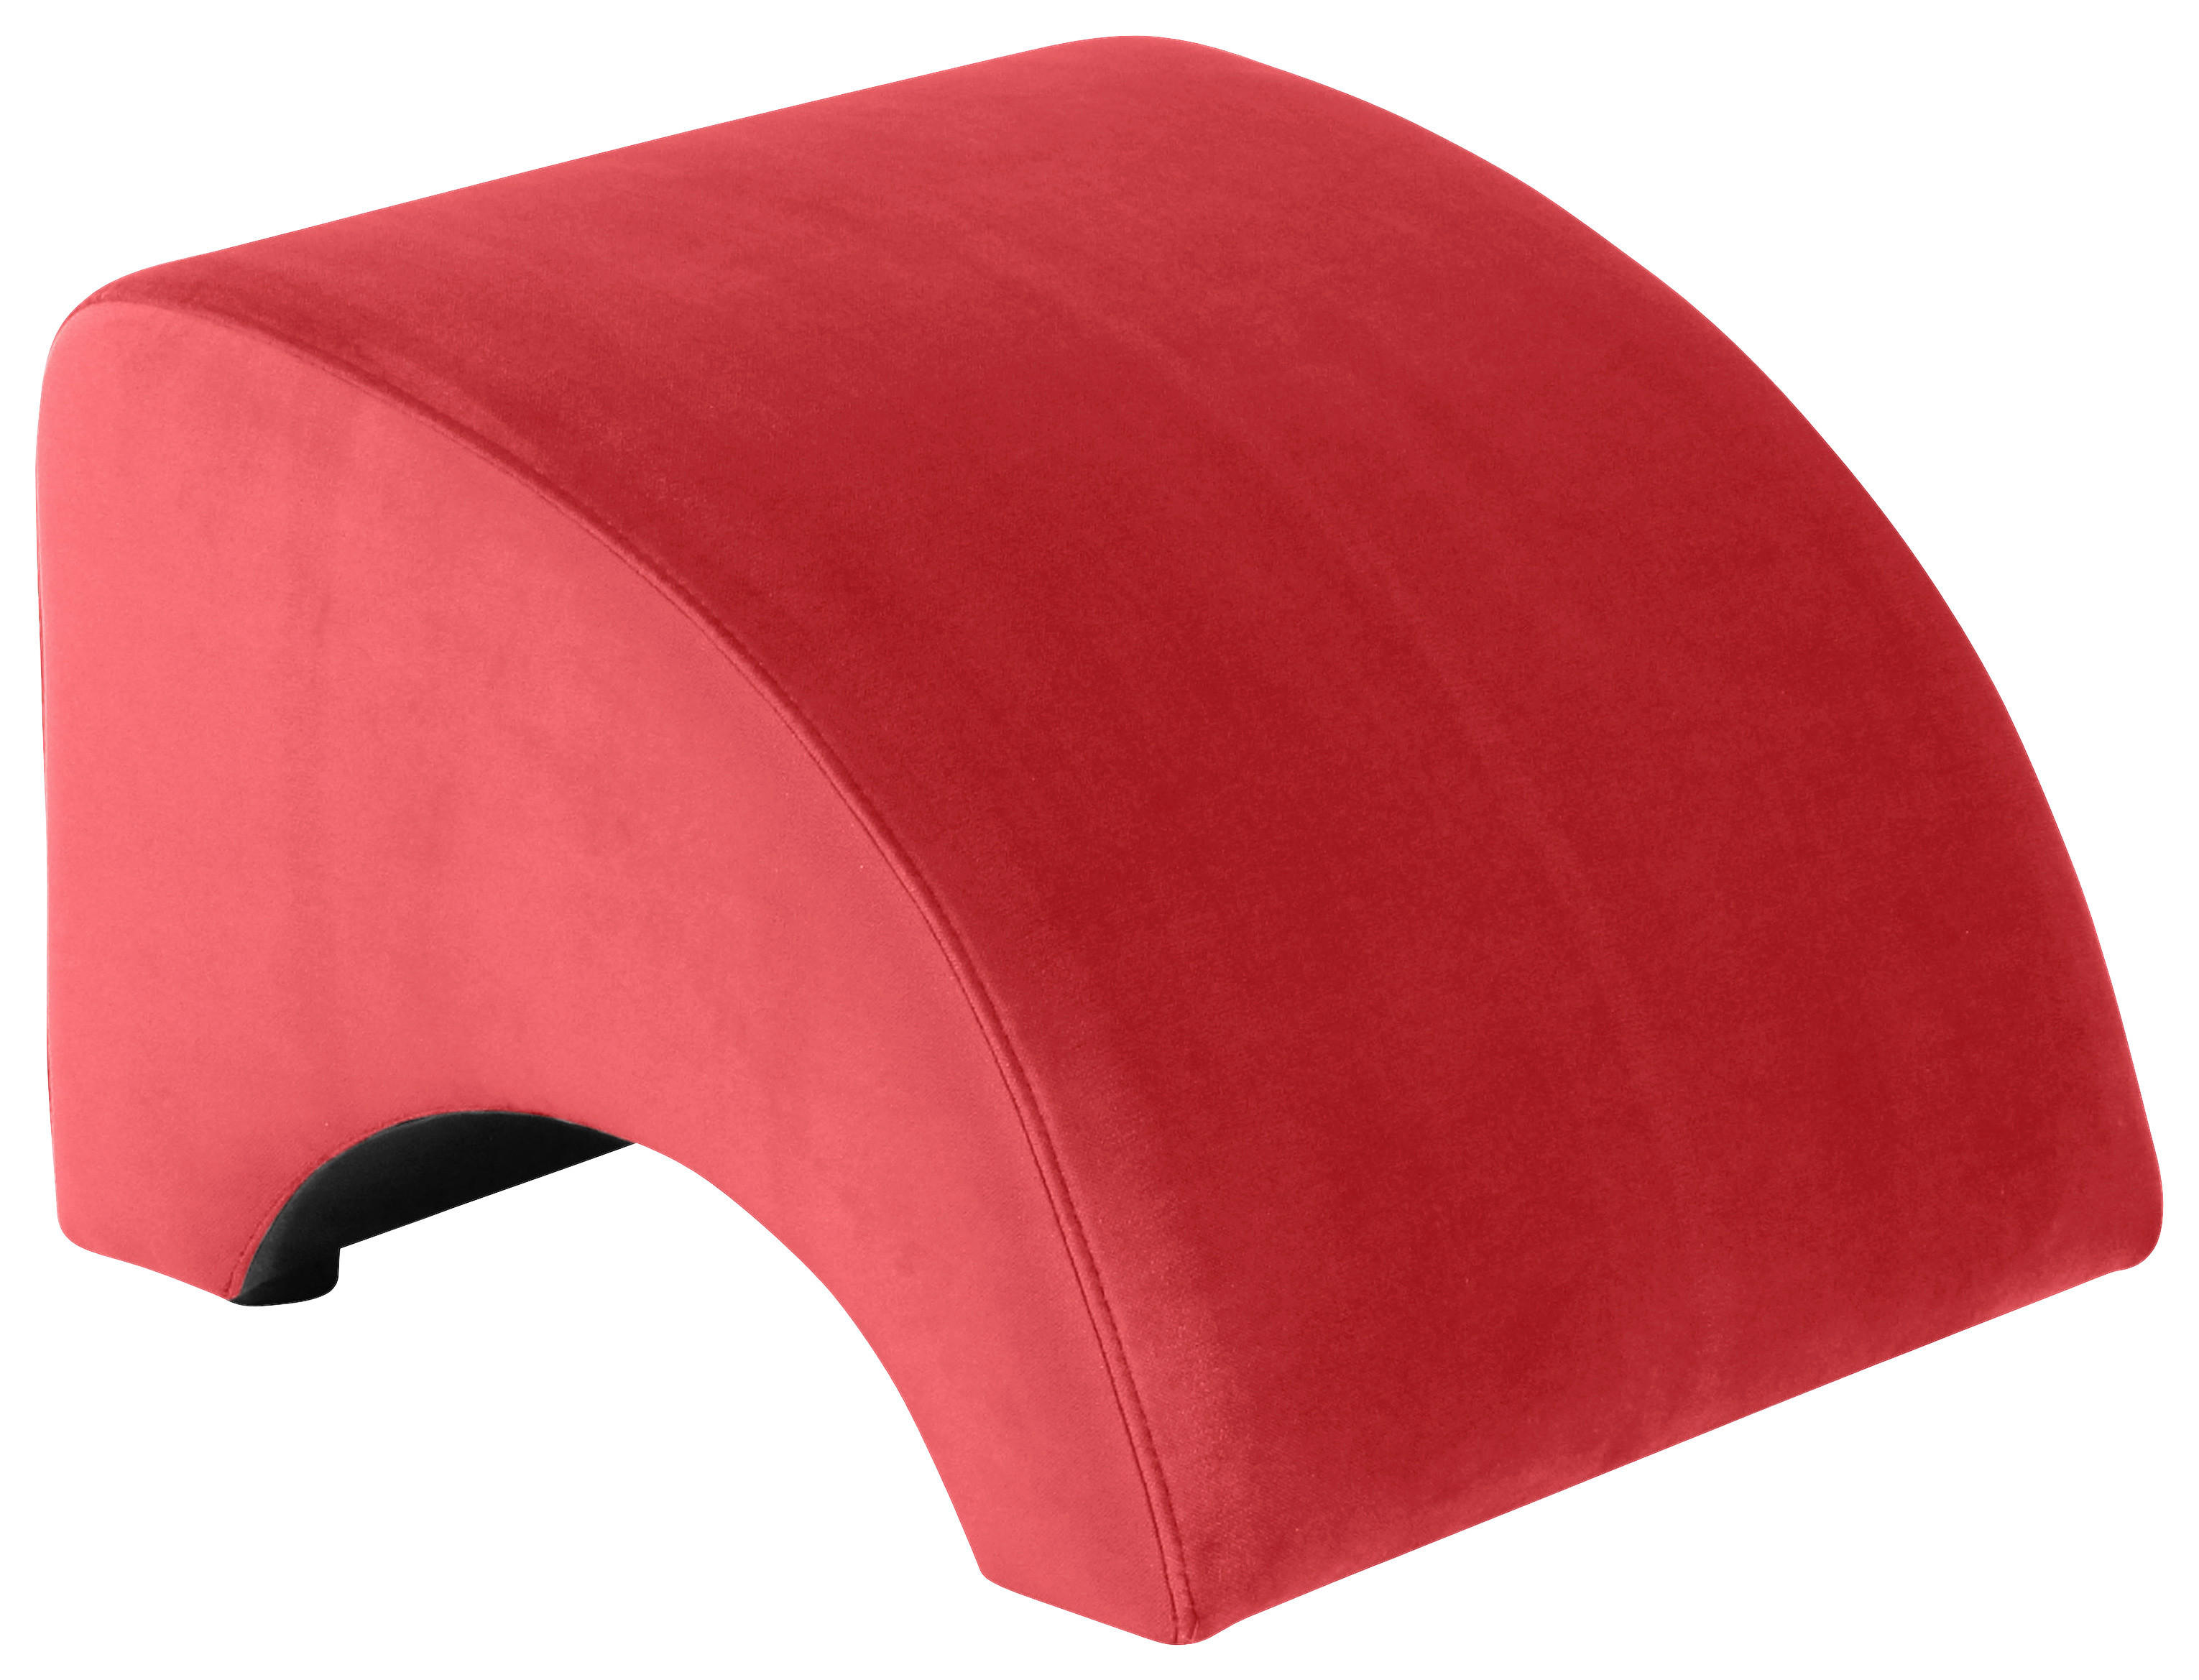 HOCKER Samt, Velours Rot  - Rot, Design, Kunststoff/Textil (52/37/54cm) - Max Winzer